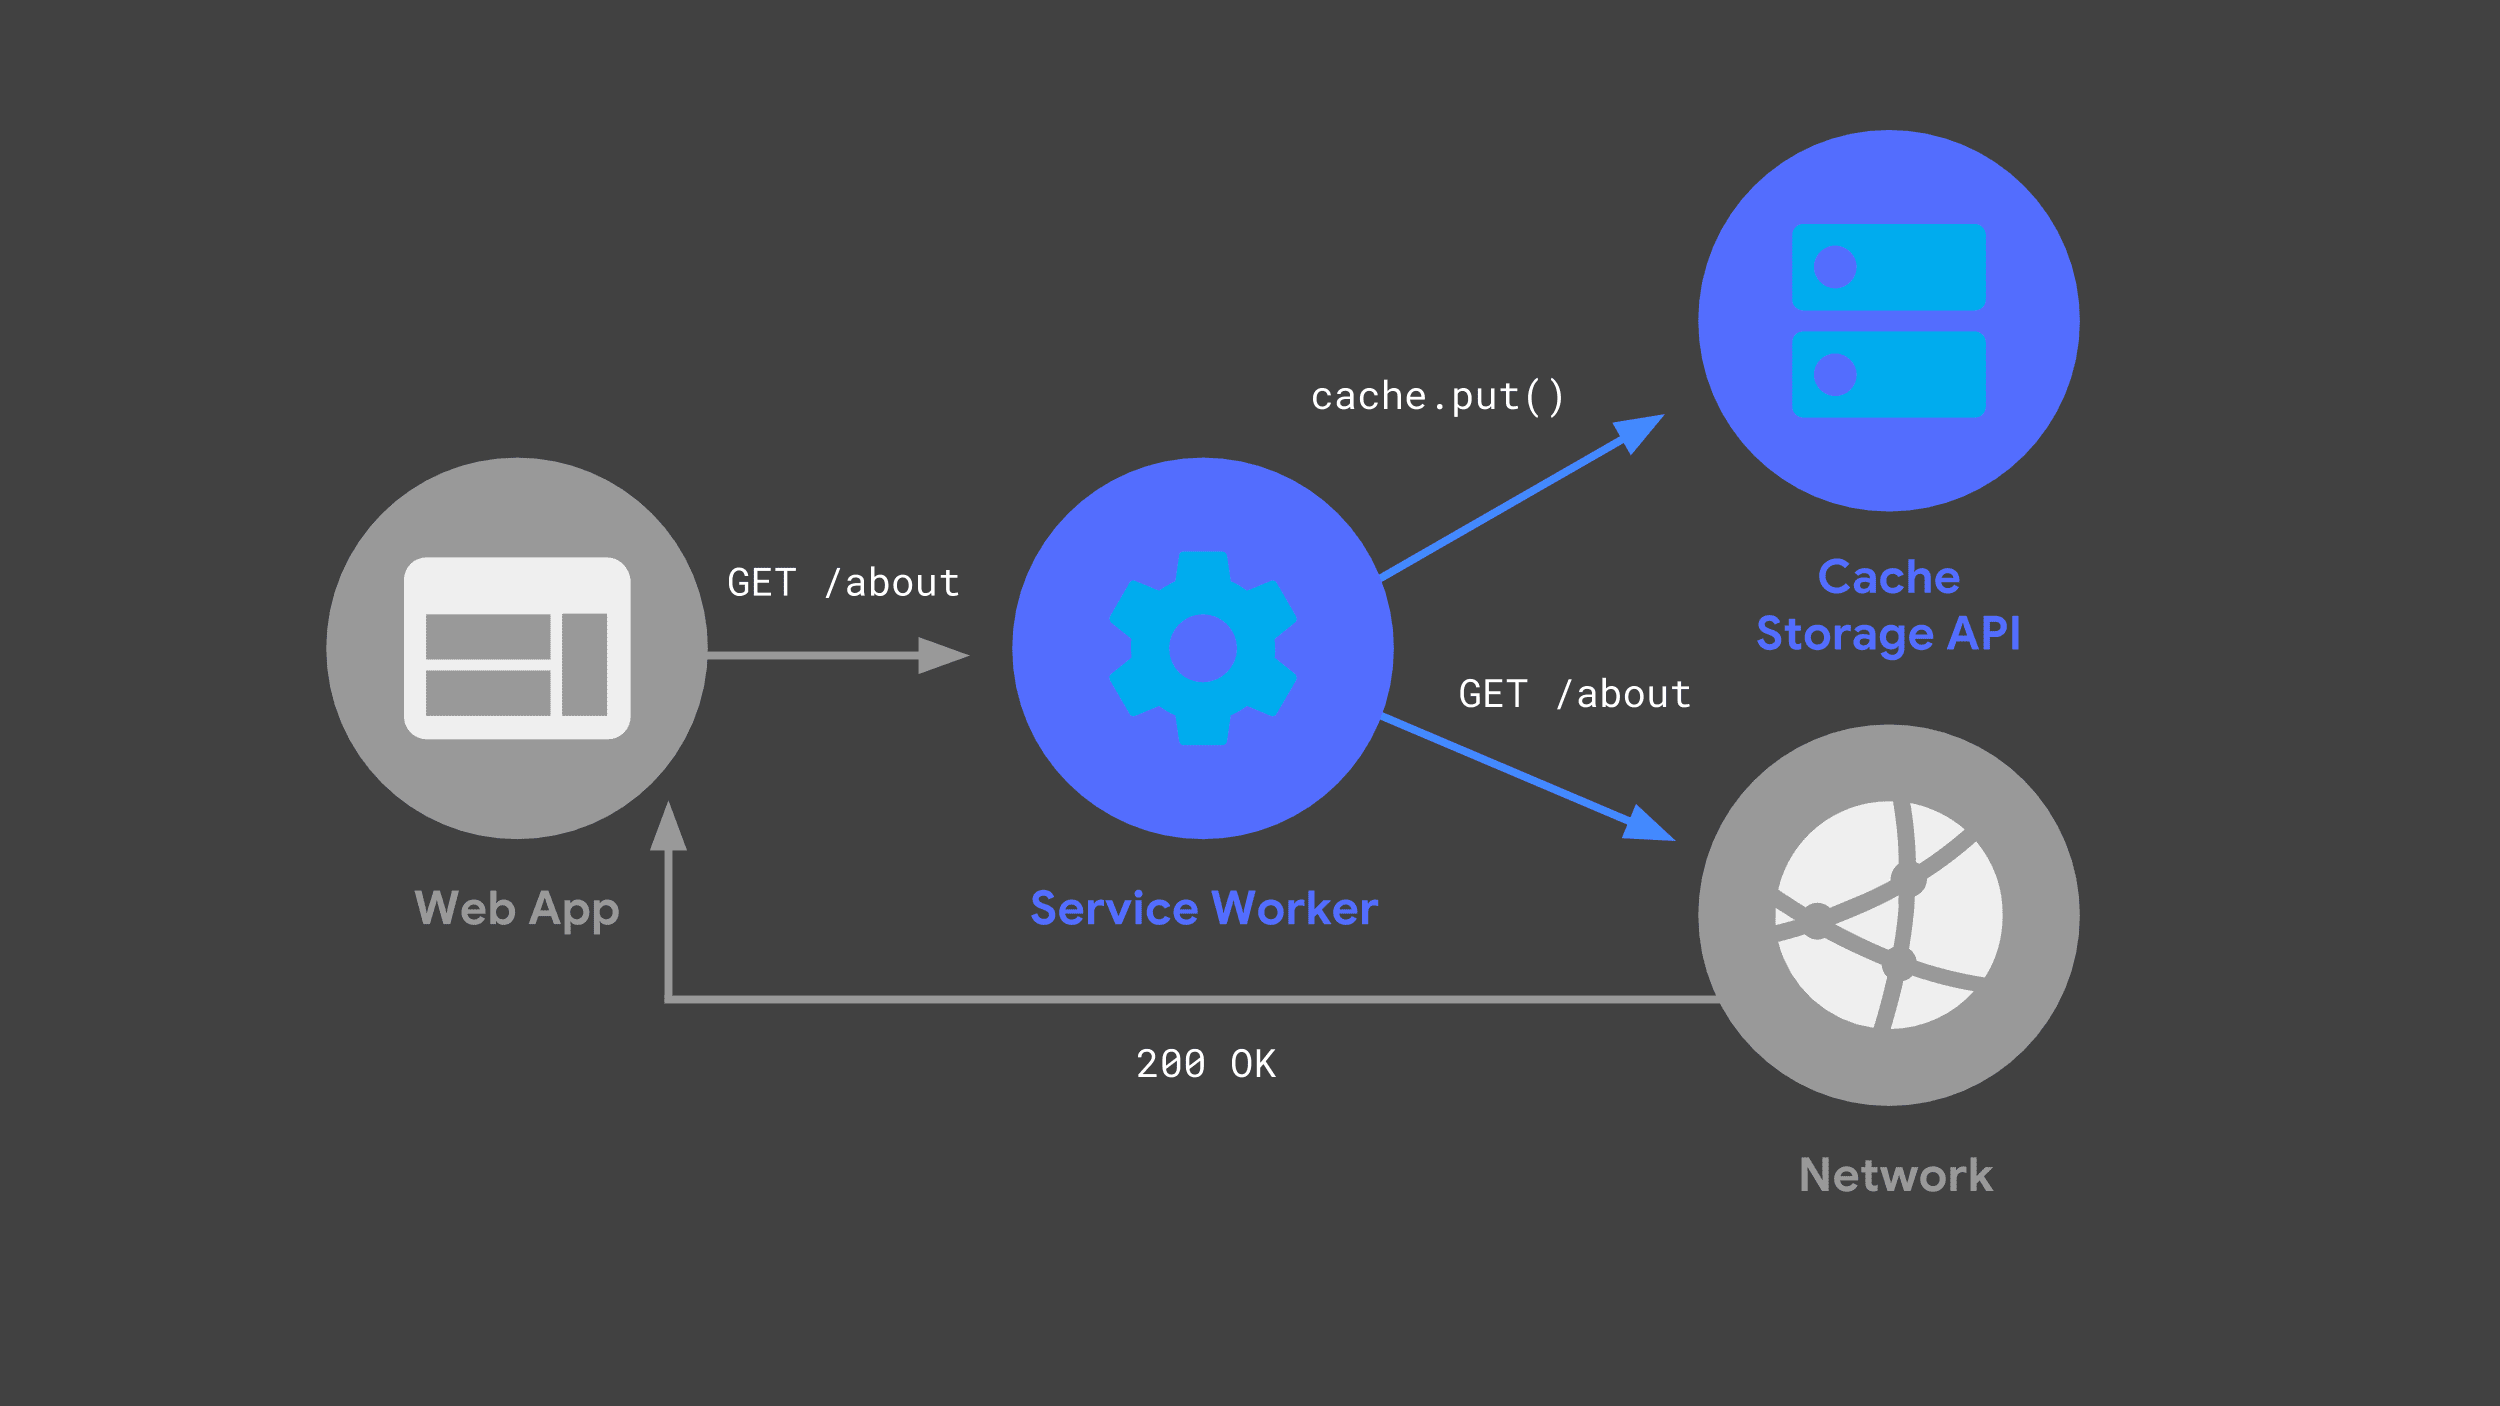 קובץ שירות (service worker) שמשתמש ב-API ל-מטמון אחסון כדי לשמור עותק של תגובת רשת.